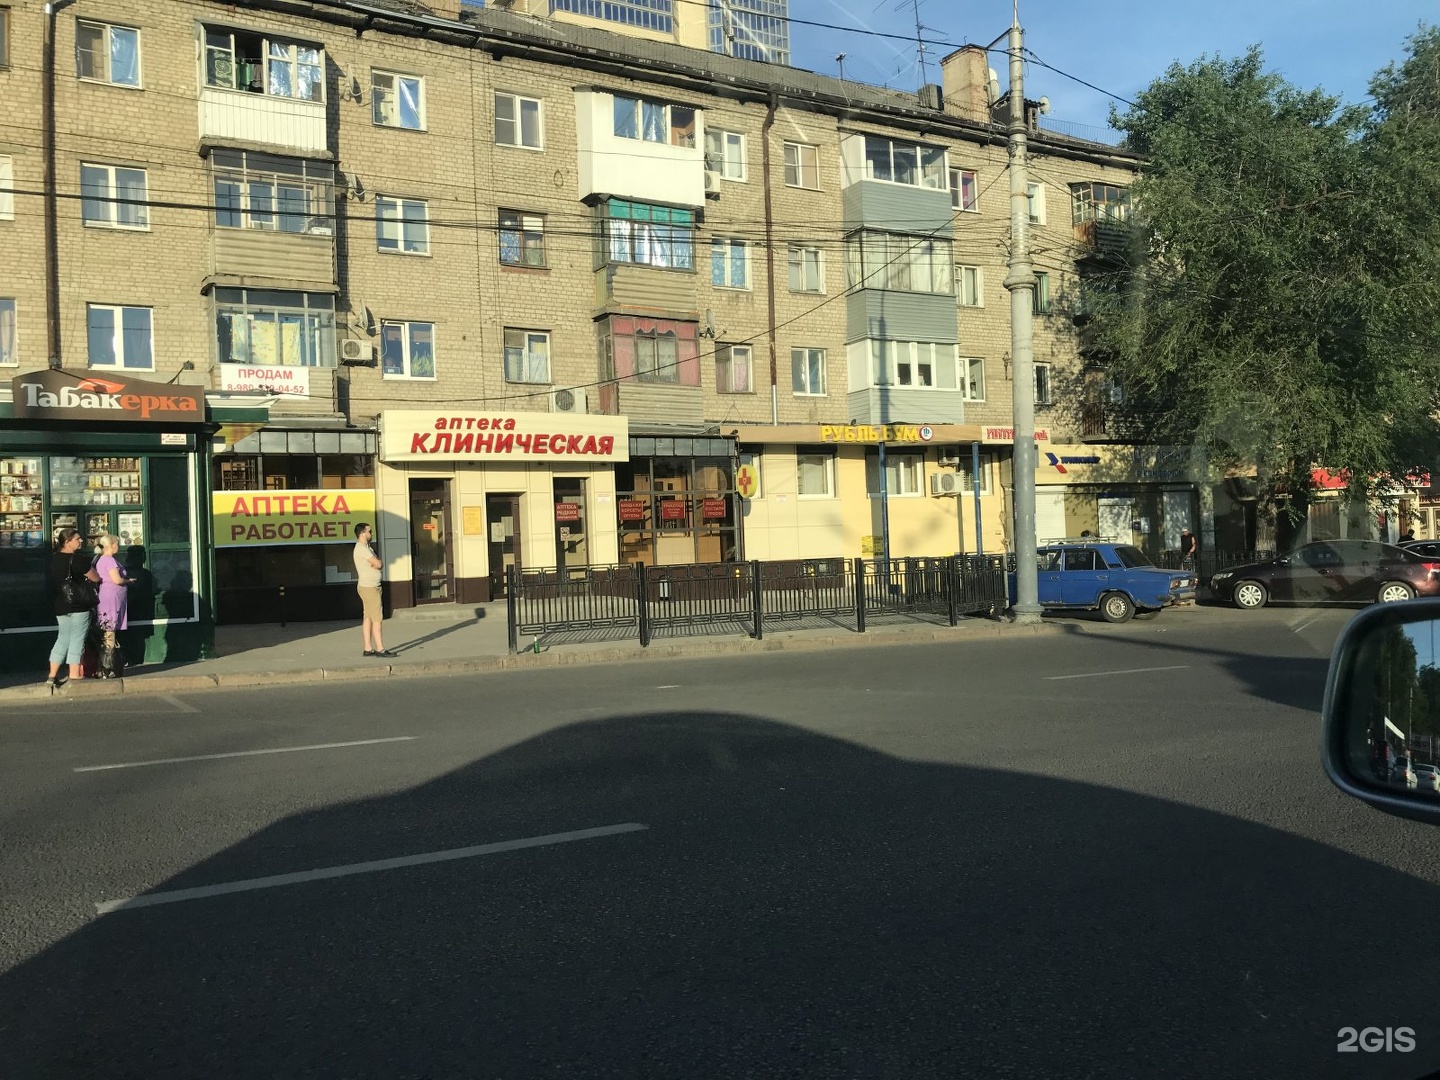 Московский Проспект 127 Воронеж Аптека